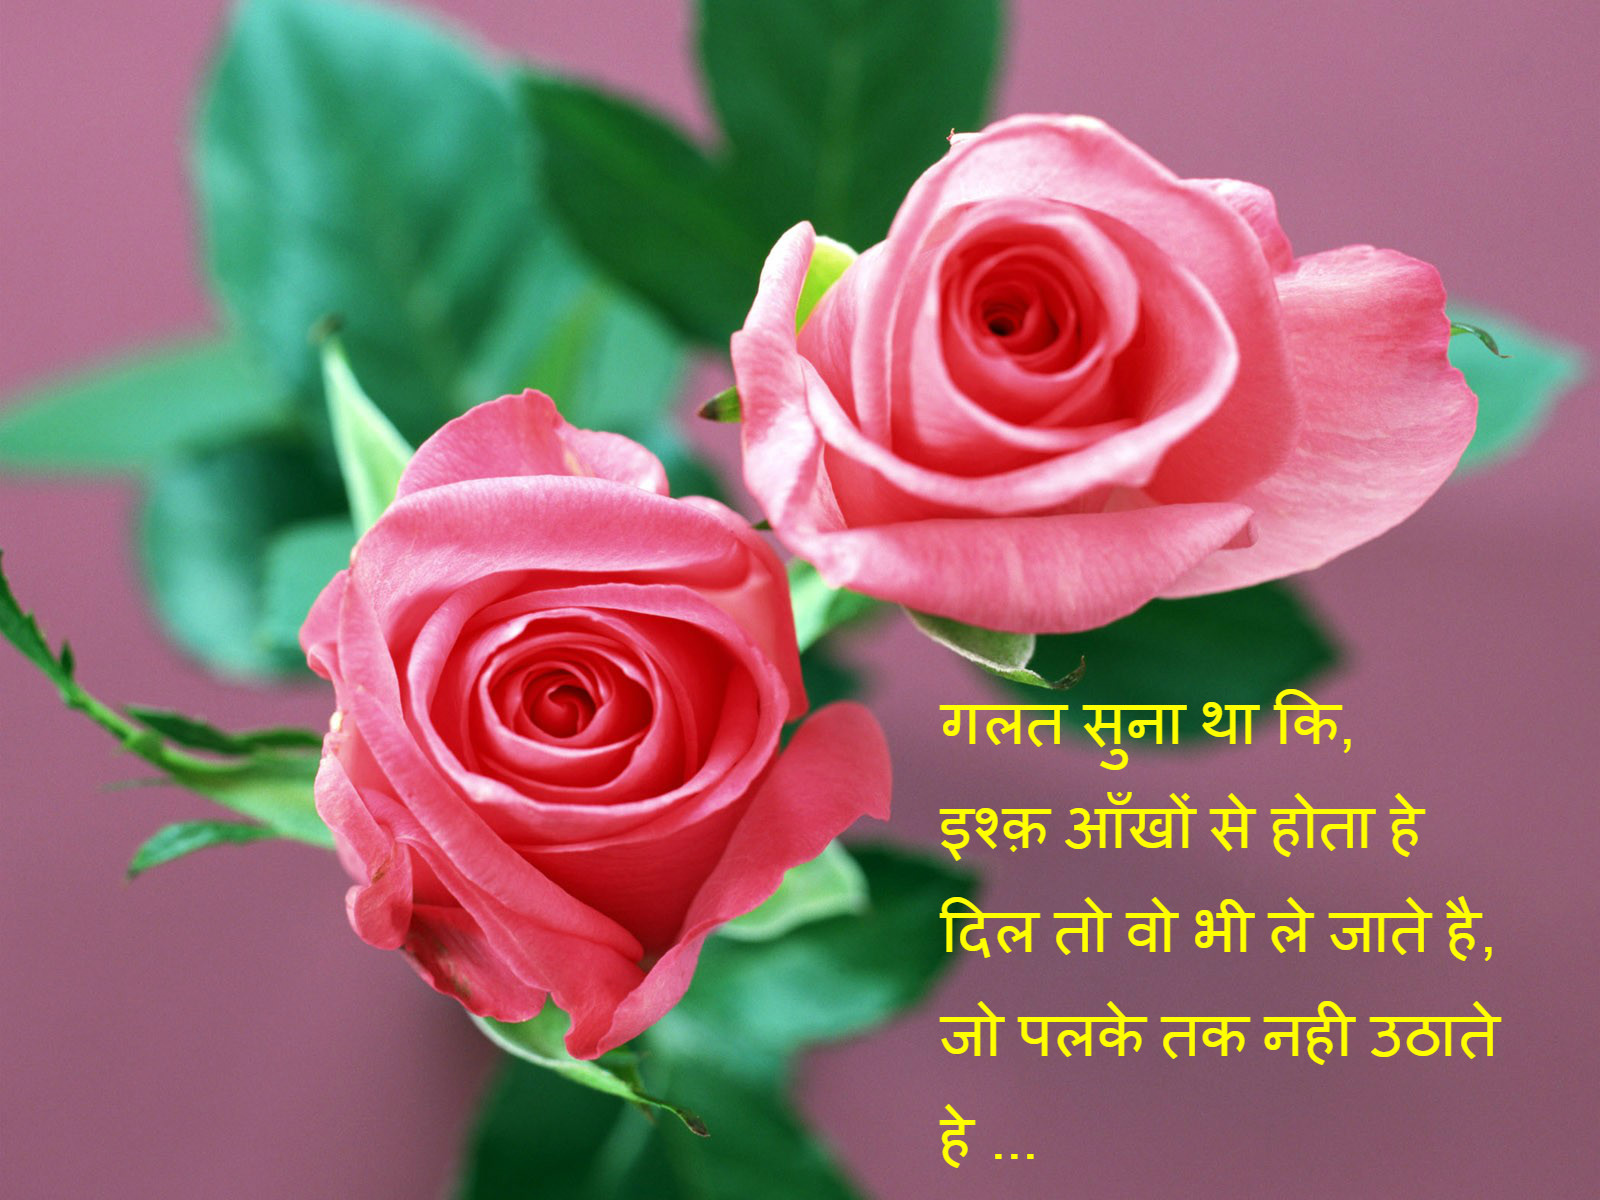 Love Hindi Shayari with images free